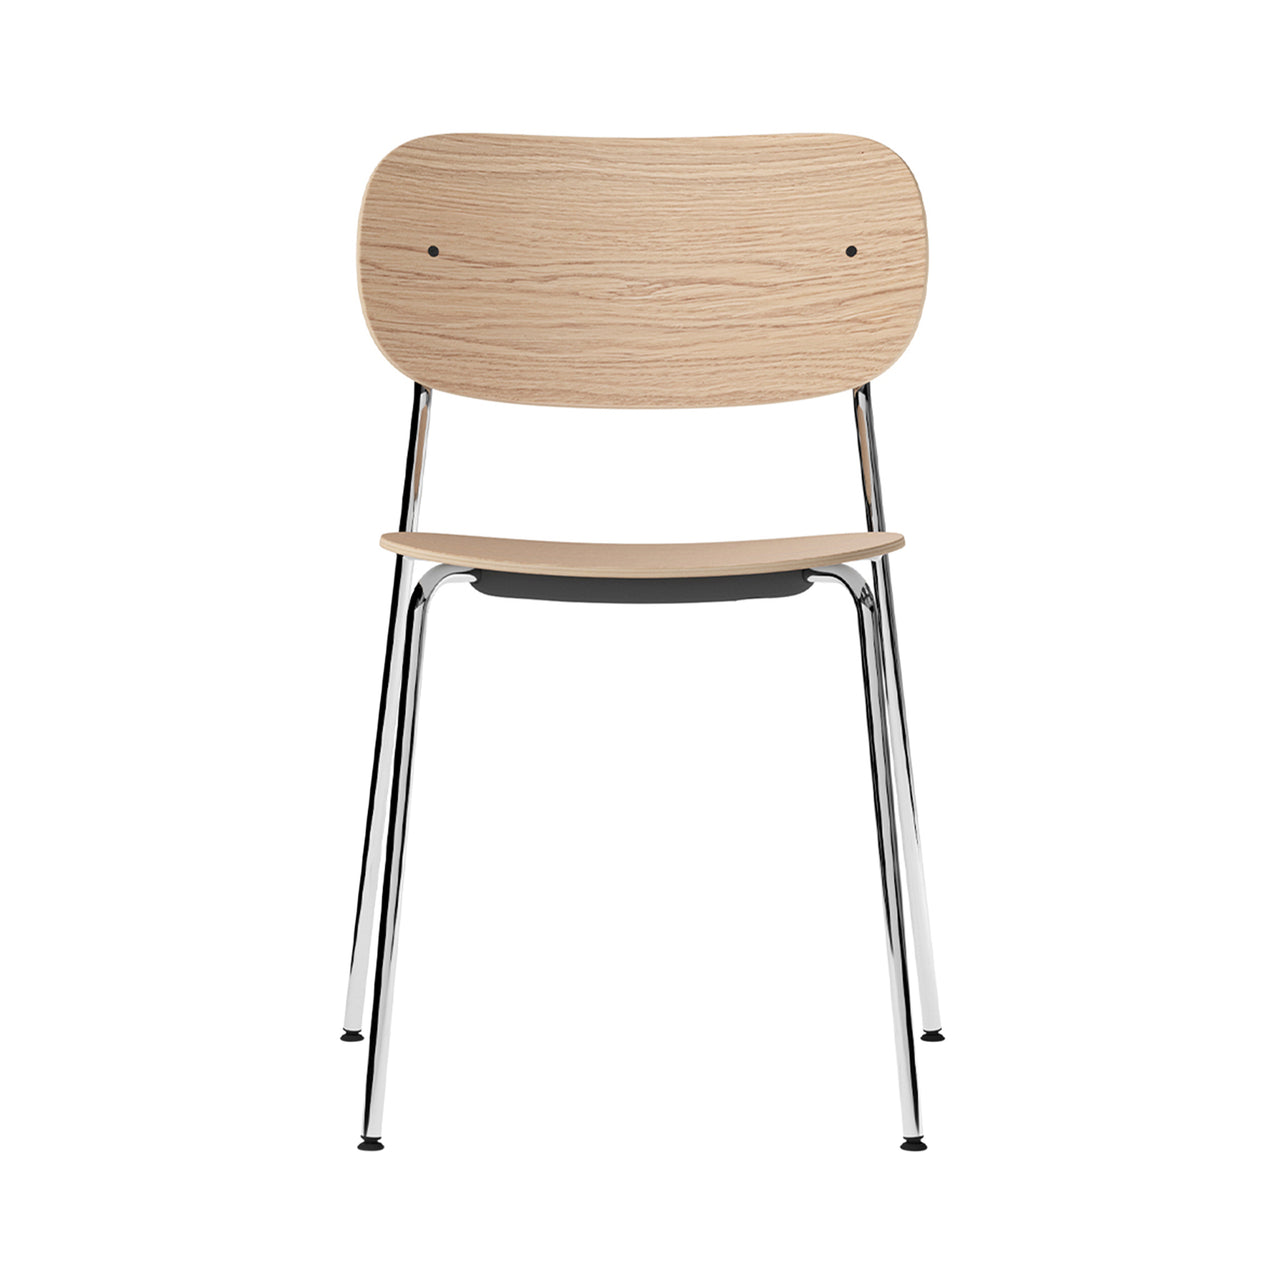 Co Chair: Chrome + Natural Oak